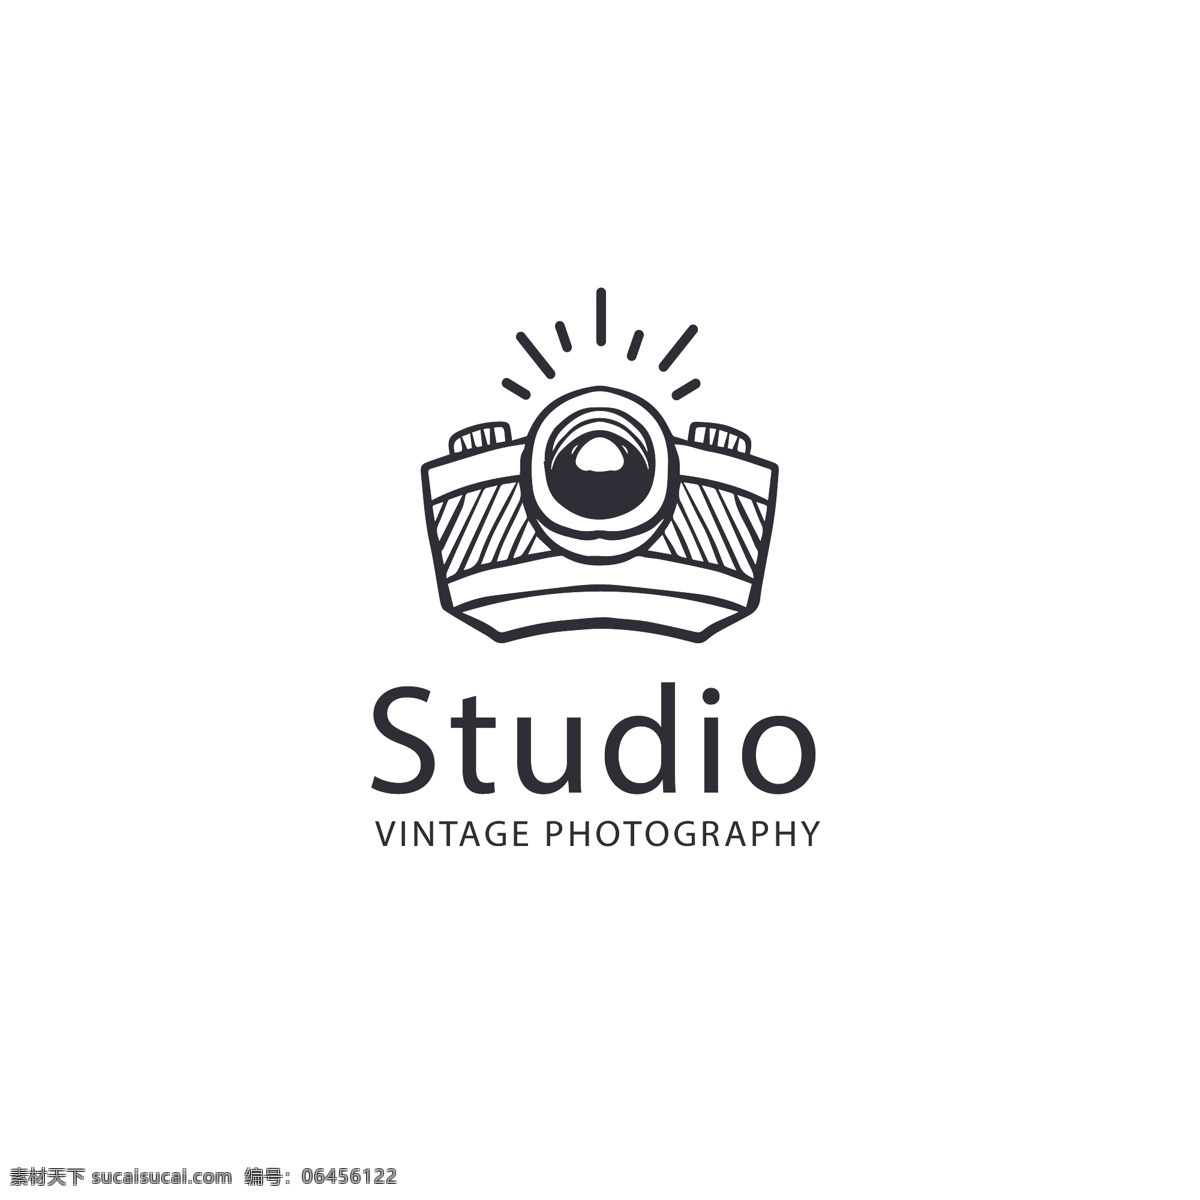 studio 黑白 色调 抽象 相机 logo模板 拍照 商标 摄影工作室 logo